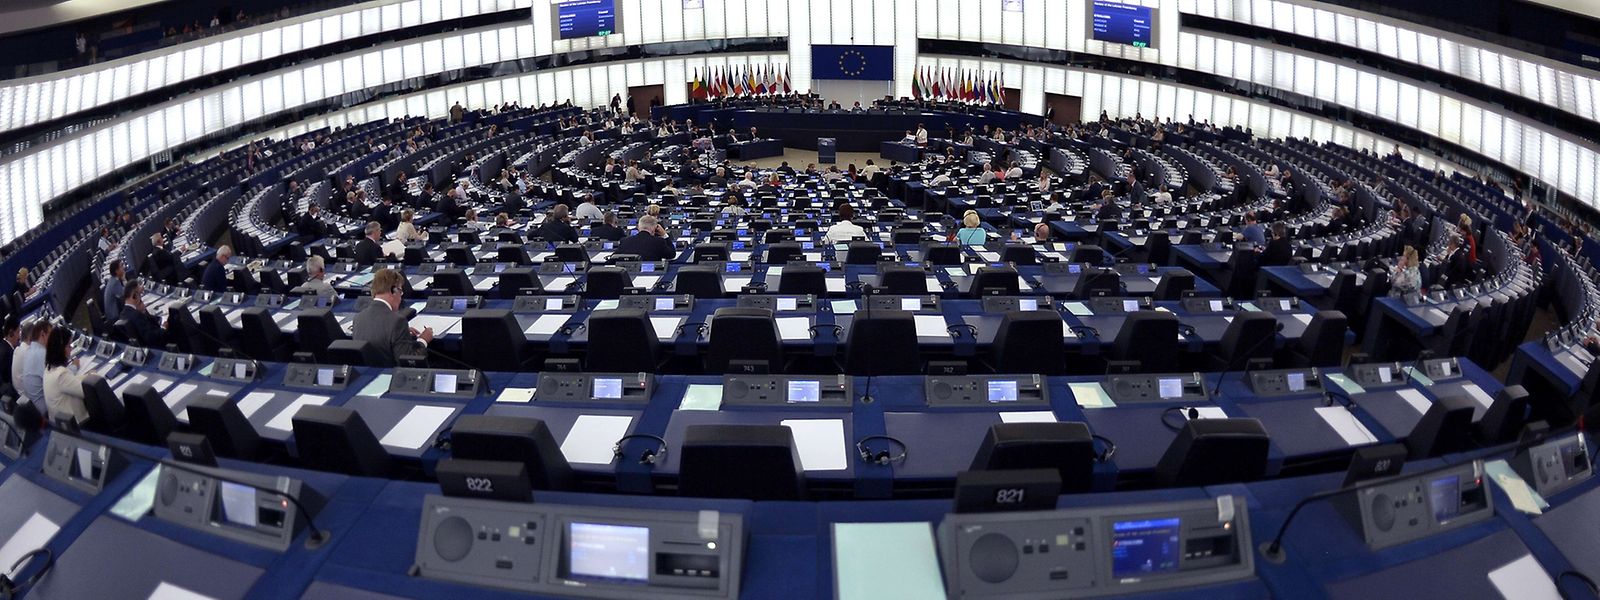 Das EU-Parlament war während der Sitzung, bei der Juncker zu Wort kam, nicht sonderlich gut besetzt.